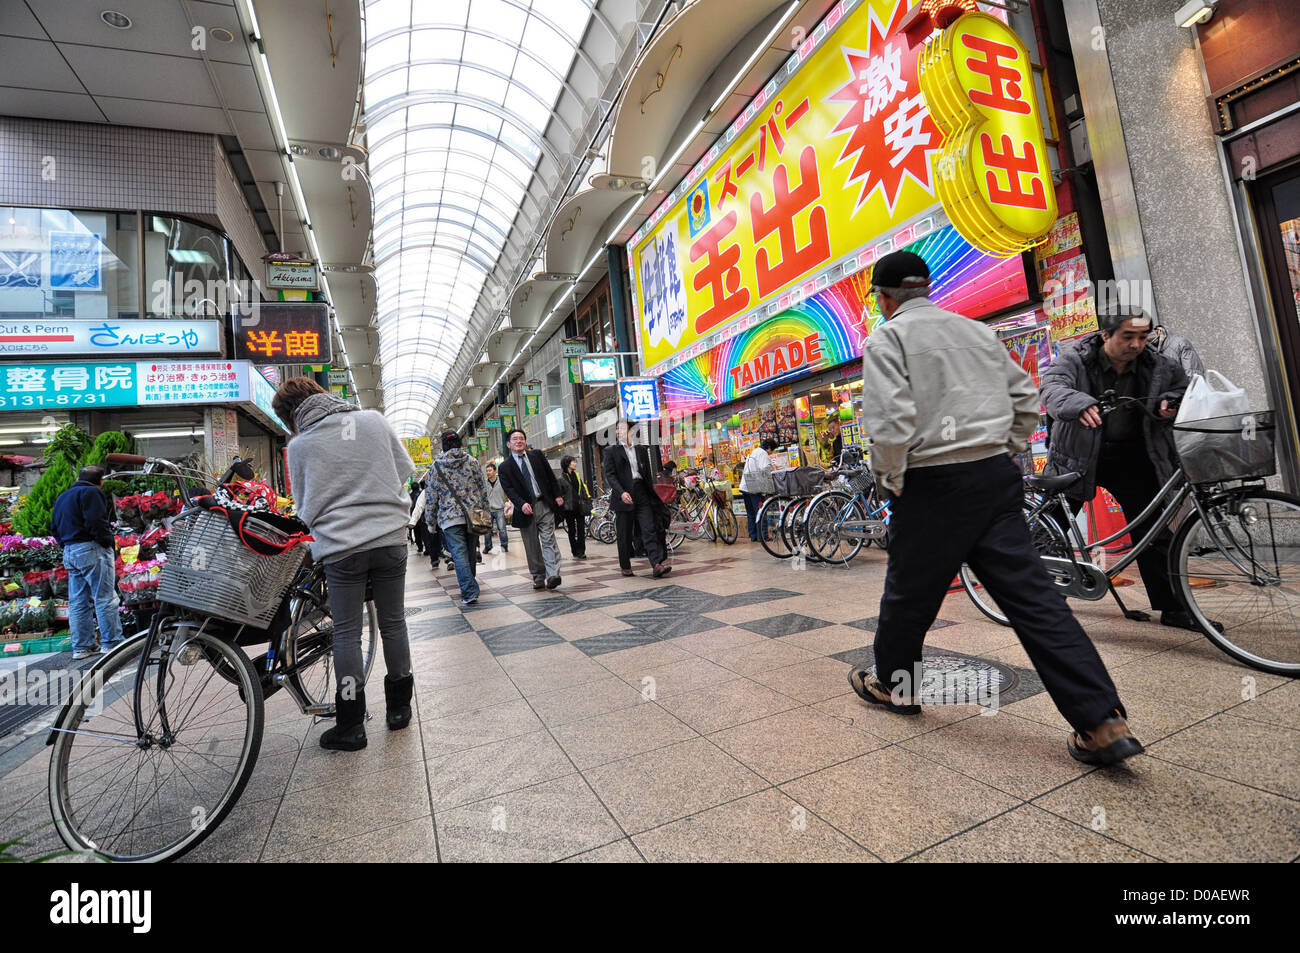 Tenjinbashi Suji Shopping Street At About 2 6km It S Japan S Stock Photo Alamy